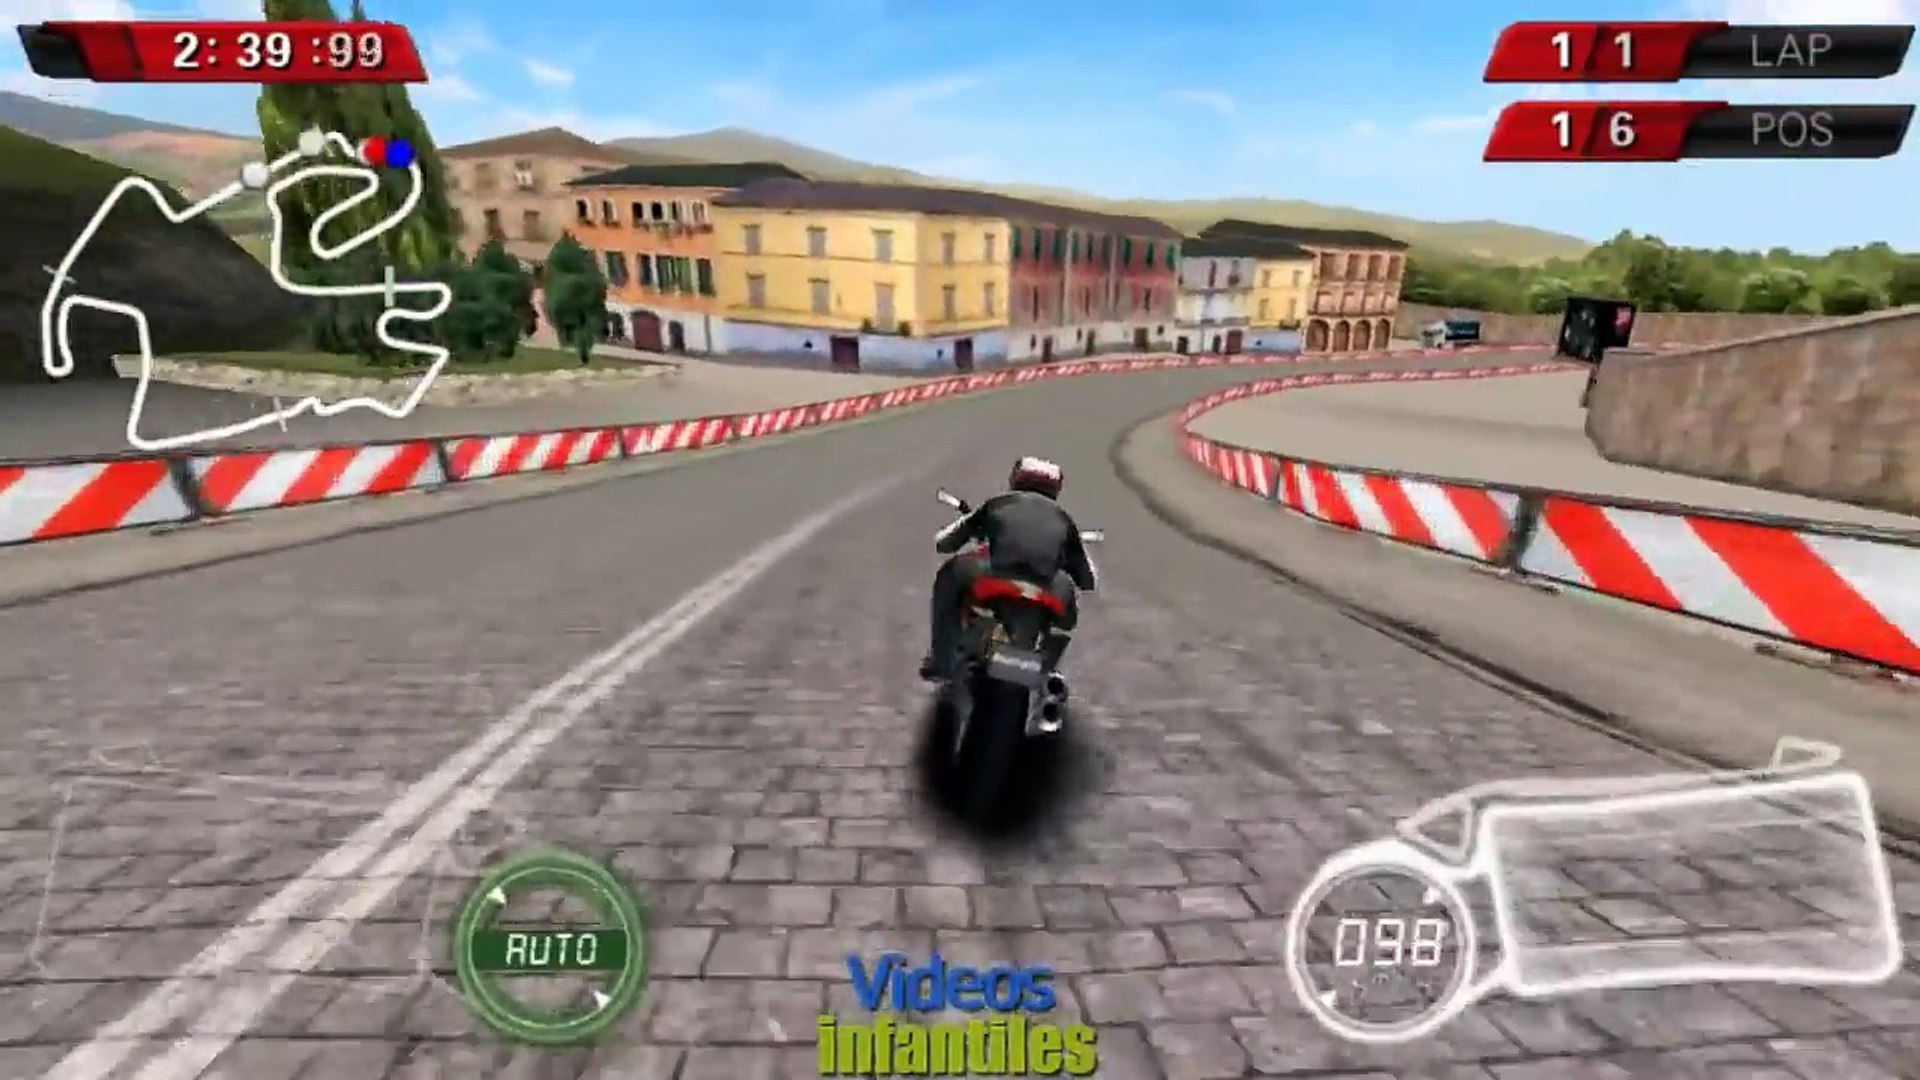 juego de motos para niños, juegos de carreras de motos gratis para jugar –  Видео Dailymotion